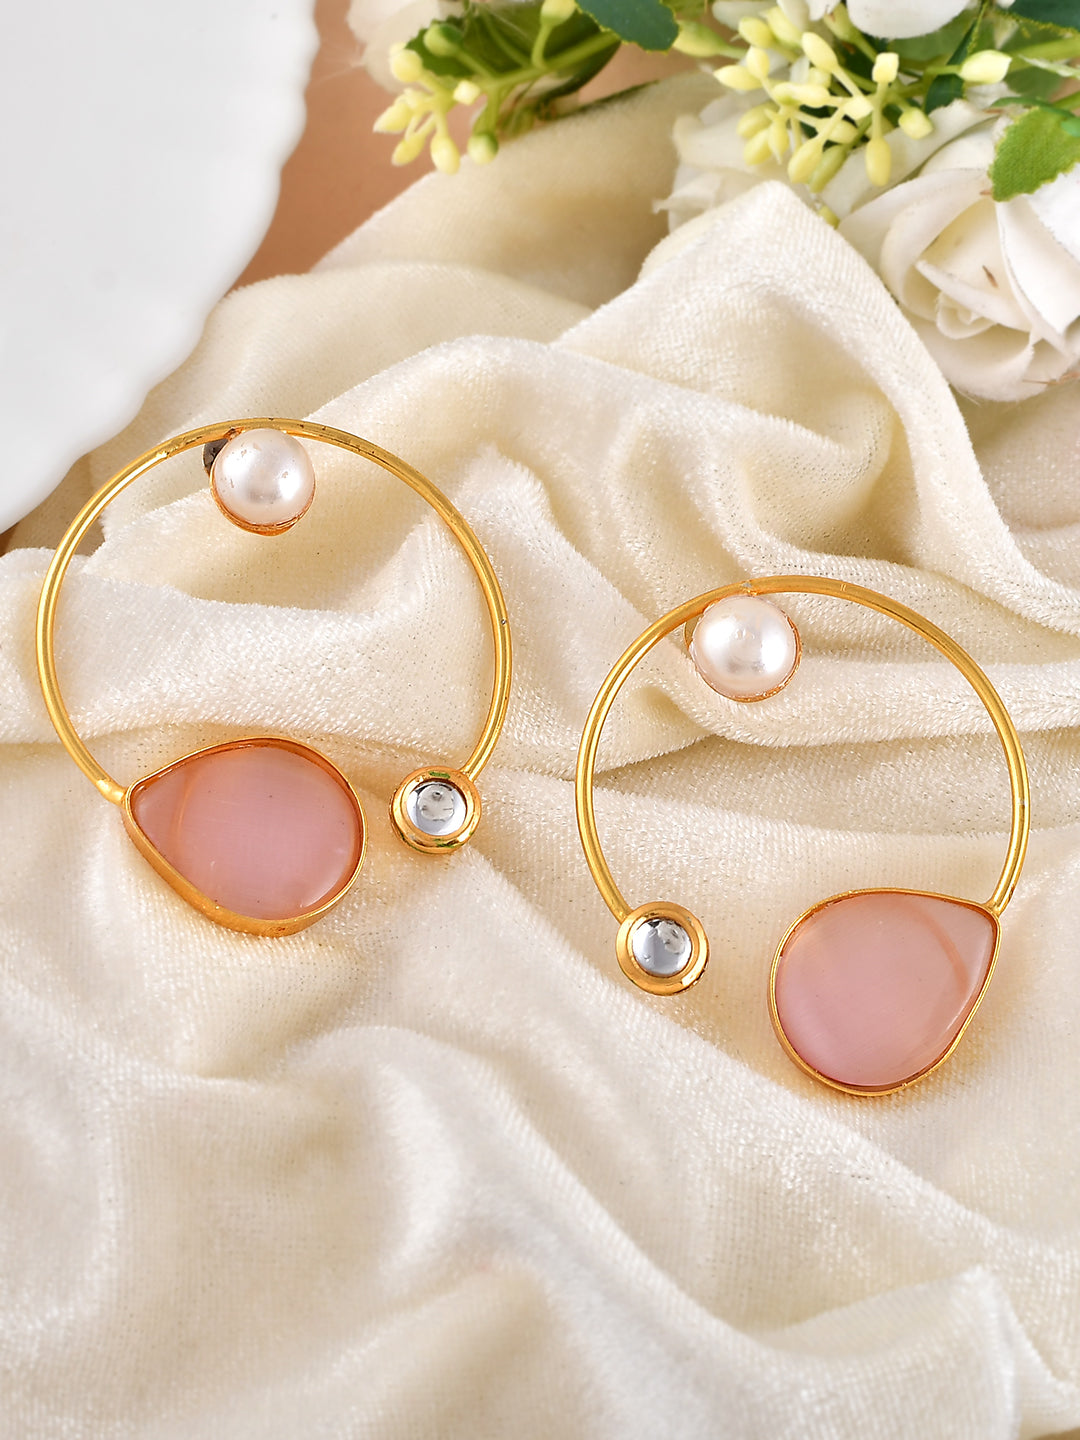 Pink Rose Quartz Stone Hoop Earrings for Women